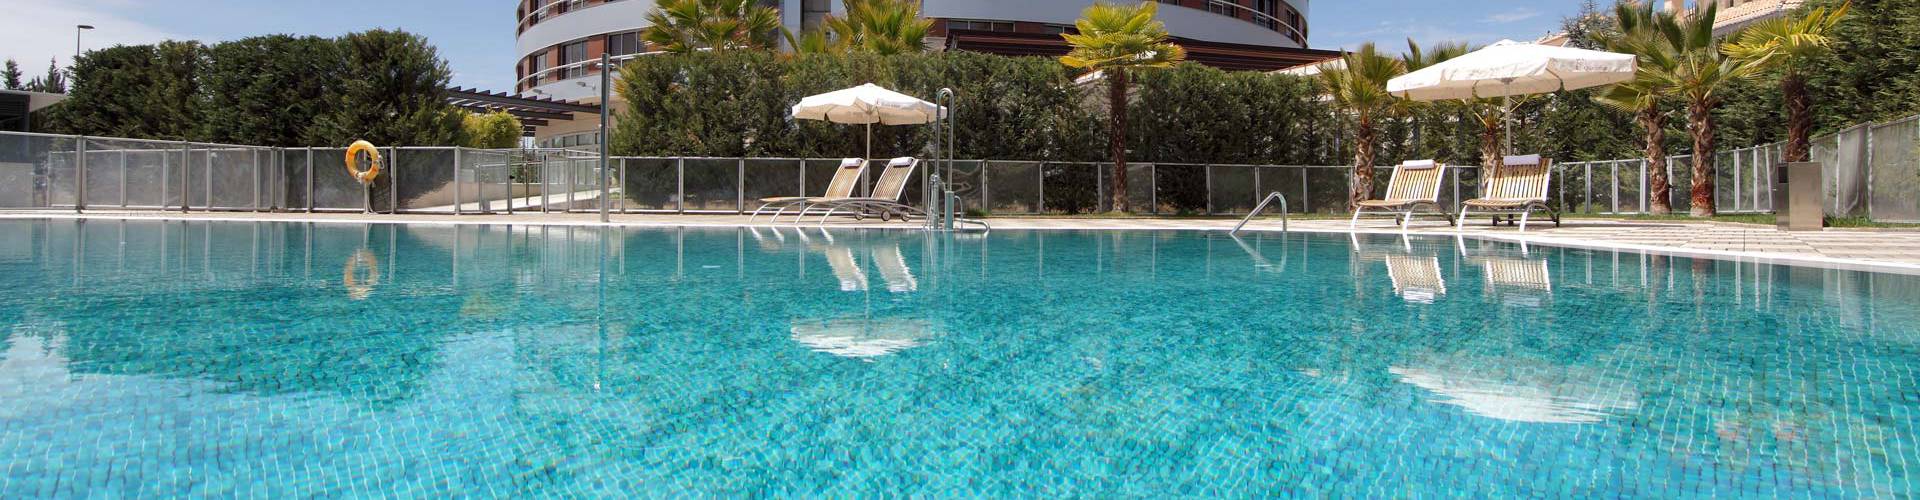 Abades Hotels - Granada - 